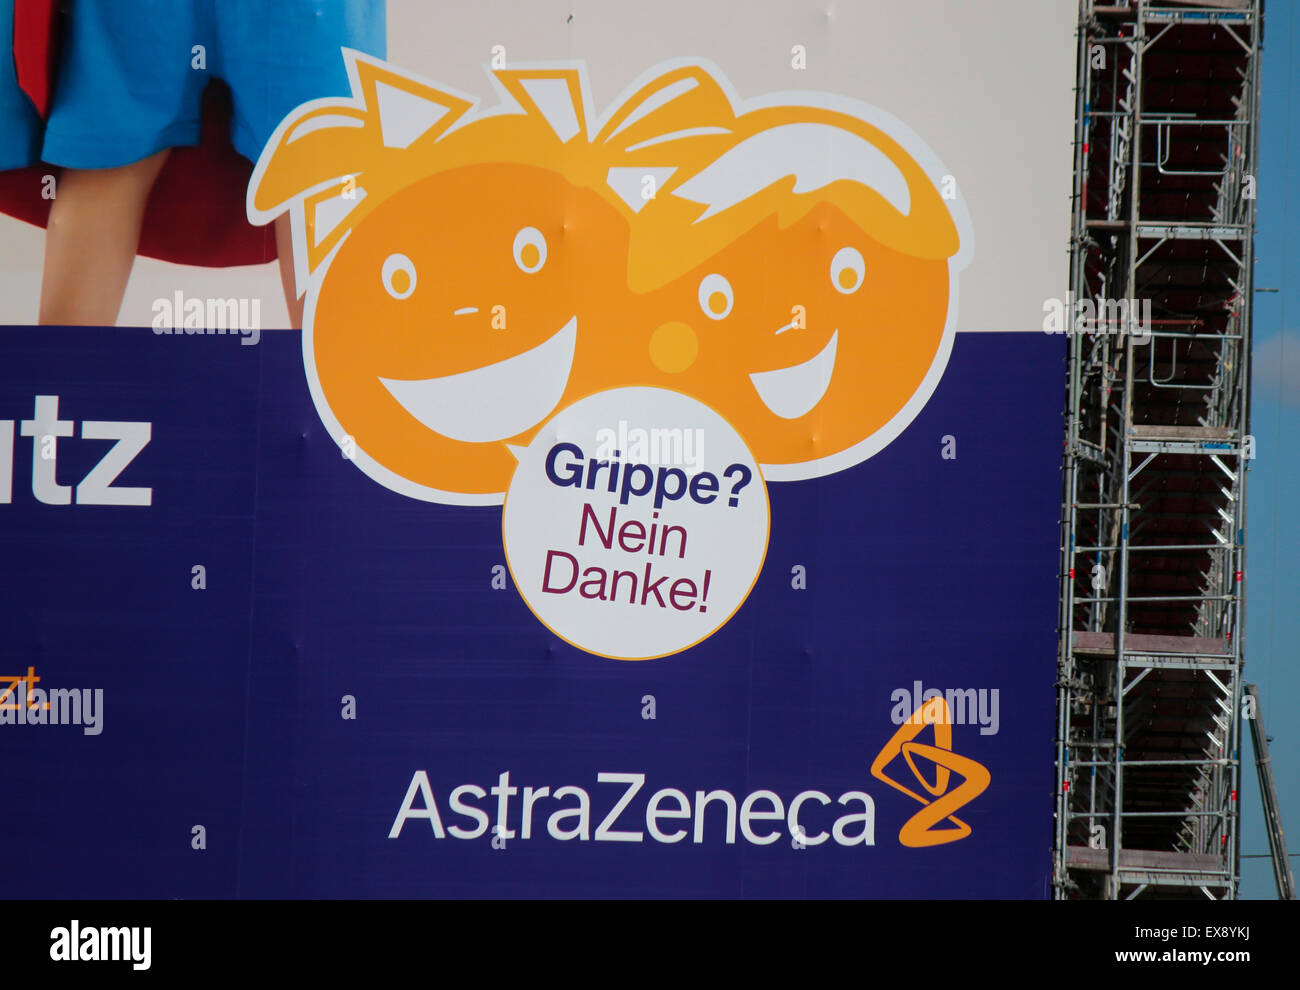 Grossplakat mit Werbung fuer Grippeimpfung mit dem Serum des Herstellers 'Astra Zeneca', Berlin. Stock Photo